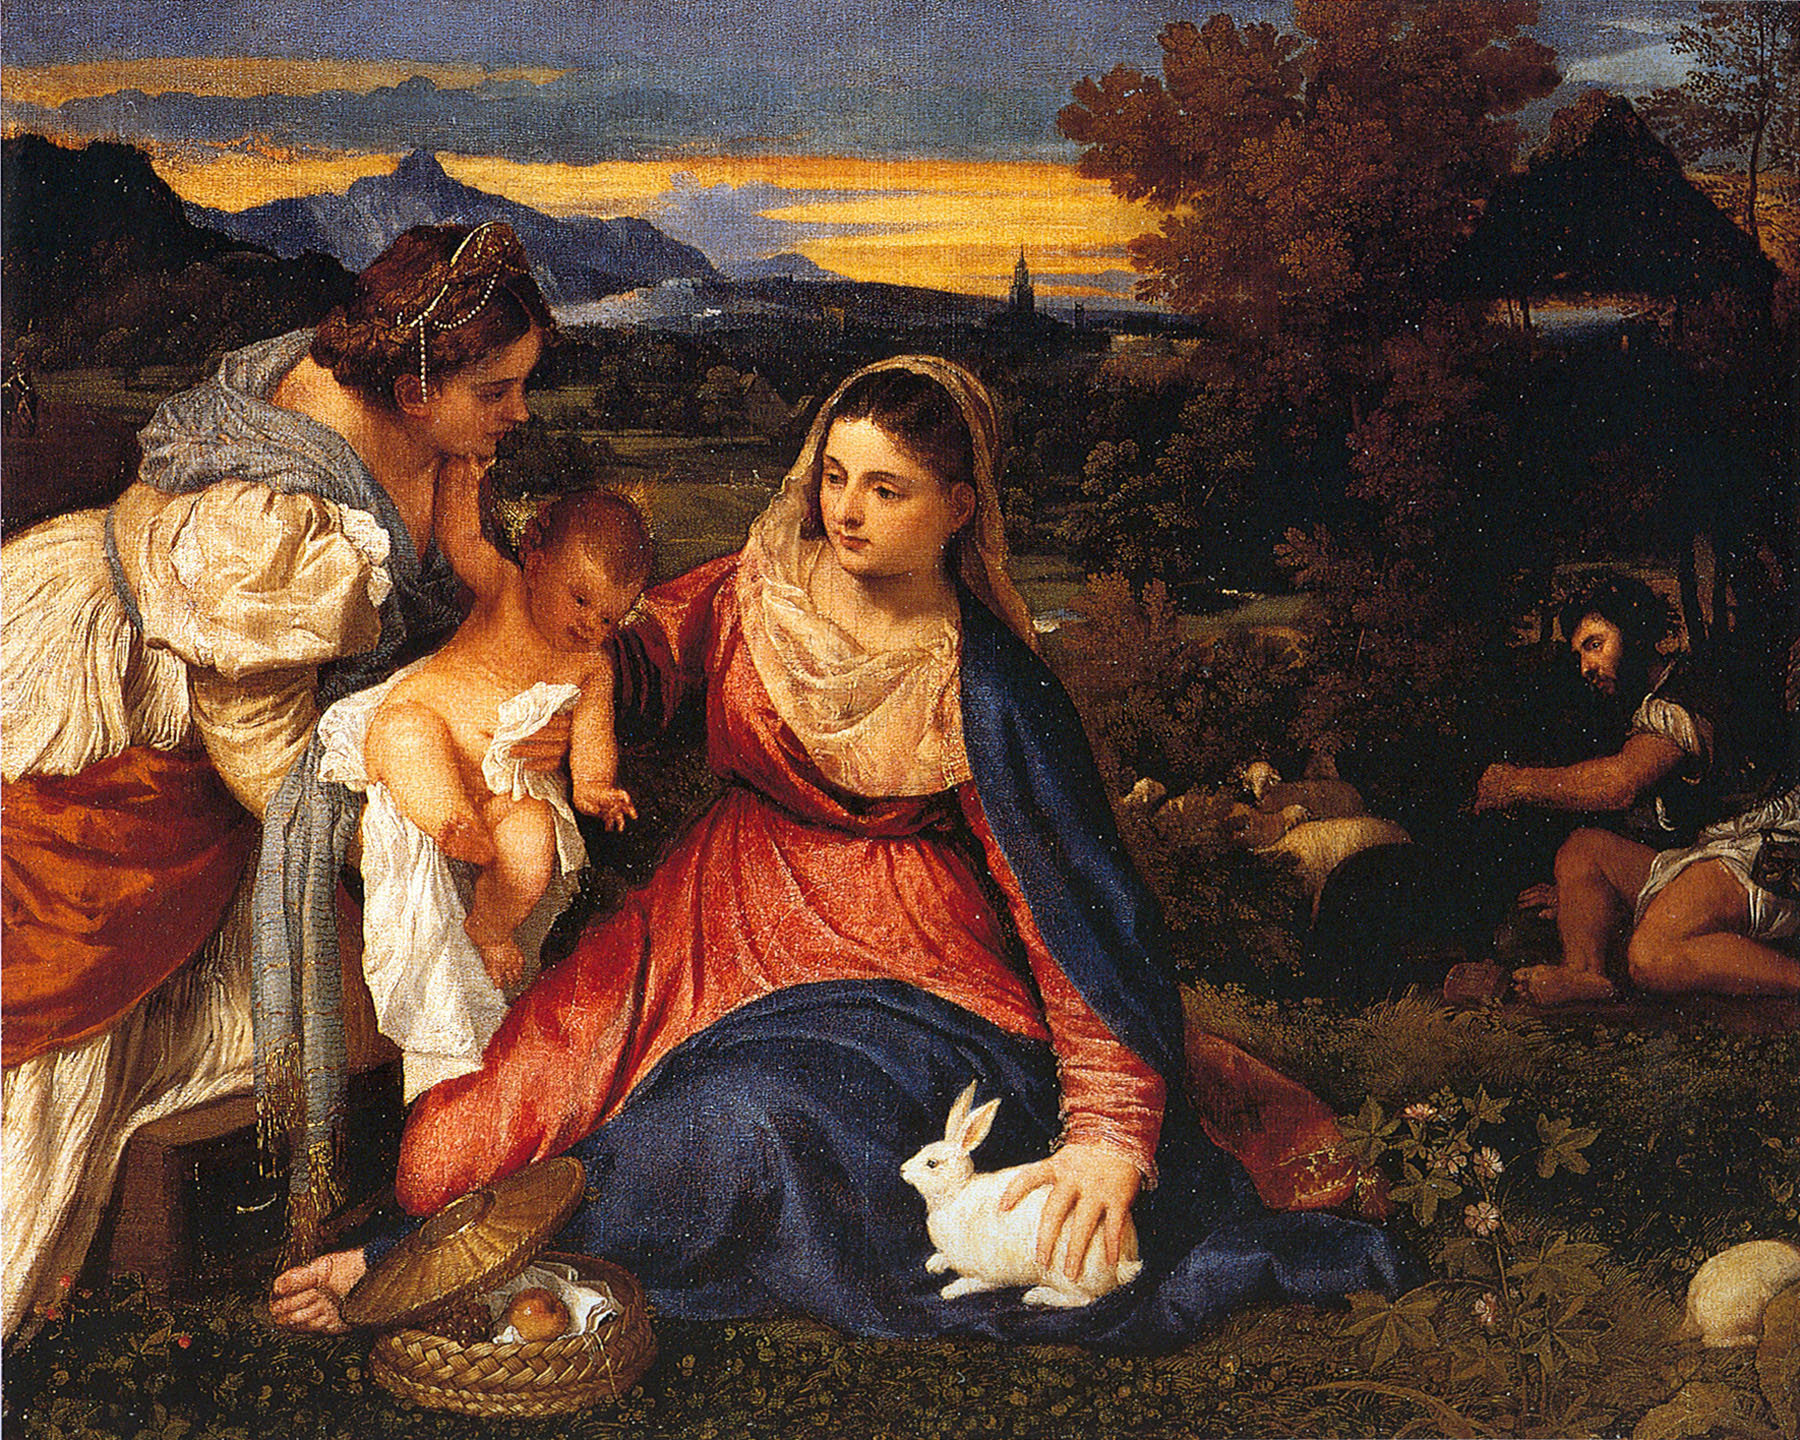 Тициан. "Мадонна с кроликом". 1530.